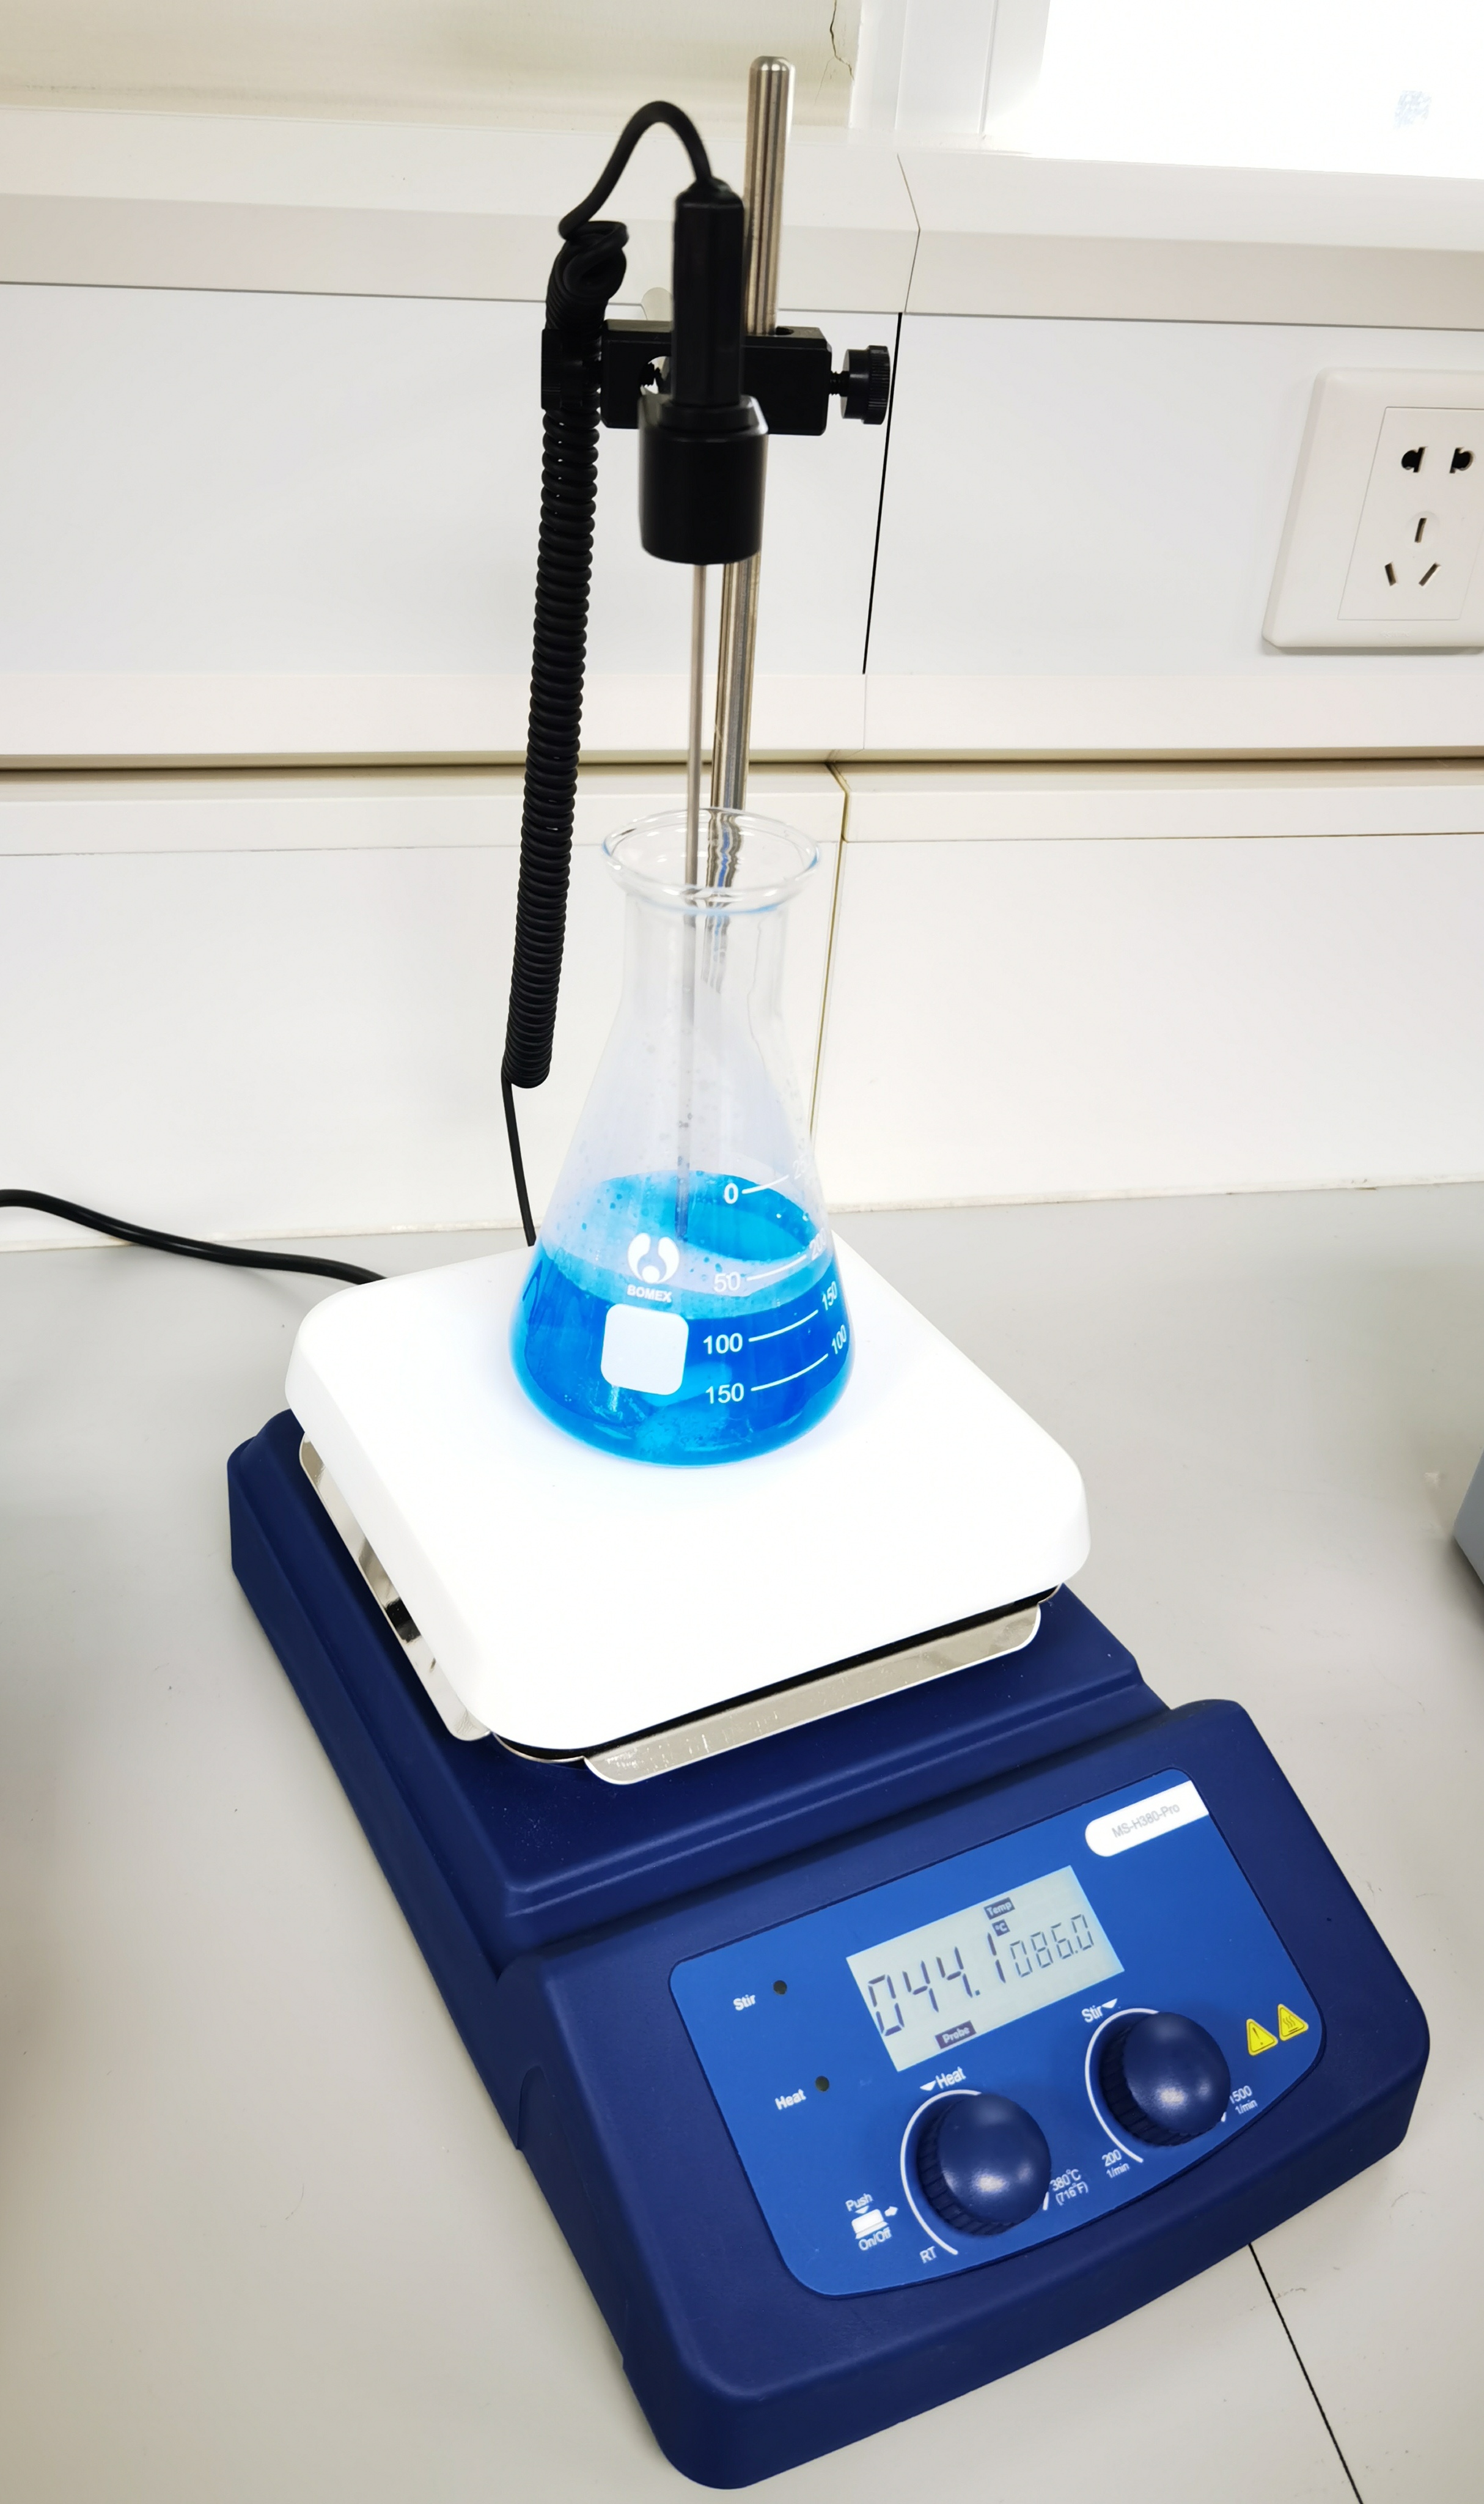 Estribos de plataformas calientes magnéticas Vistirador de vaso LCD Laboratorio de química digital gran agitador magnético